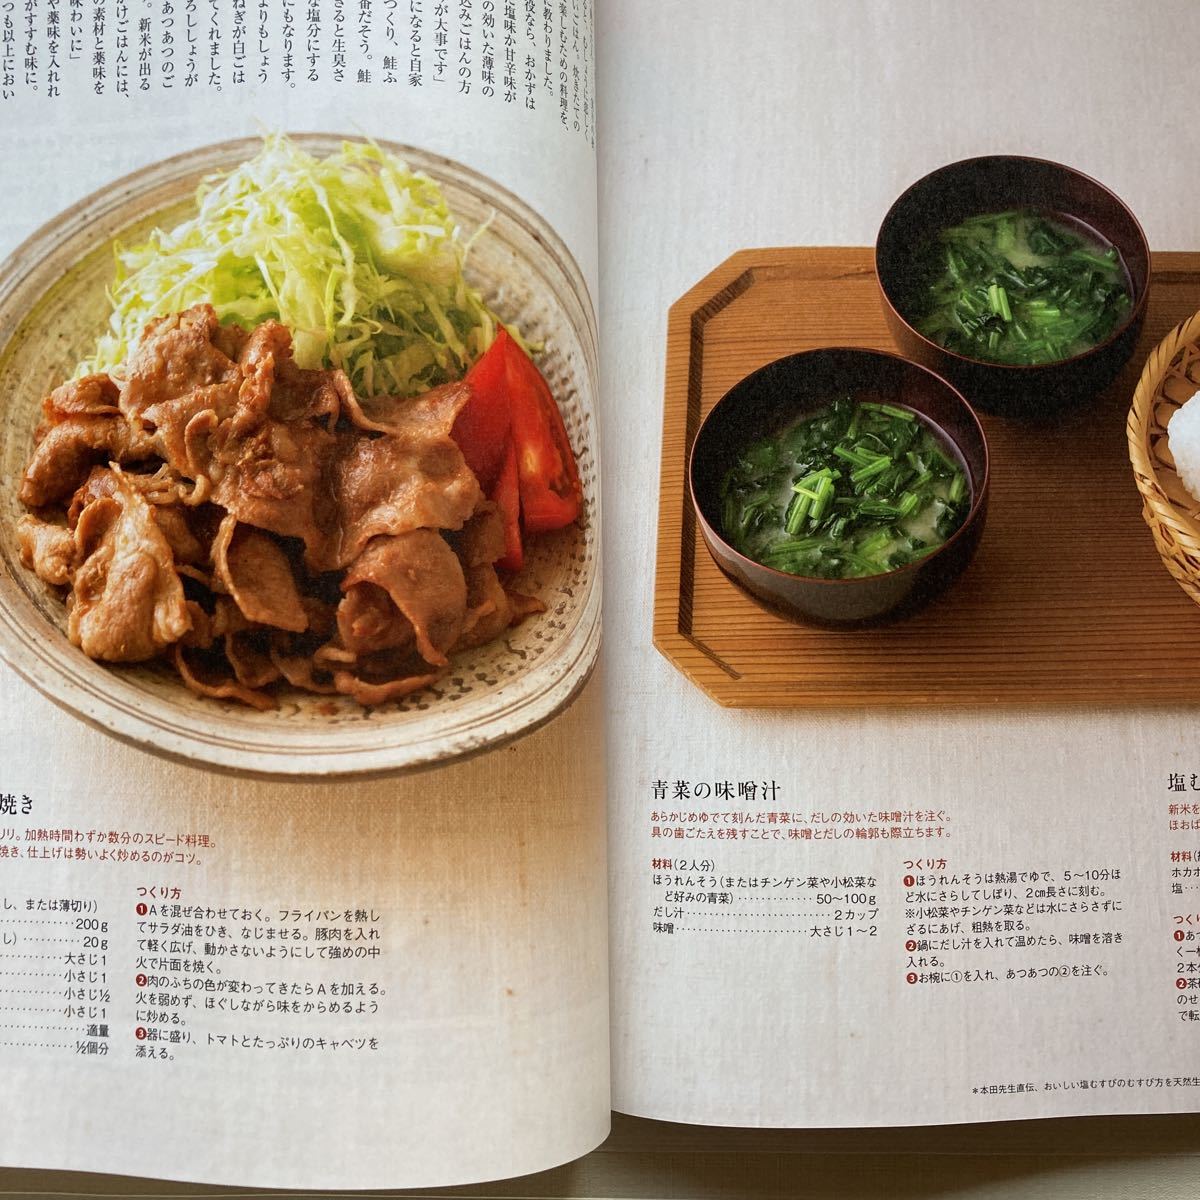 * натуральный жизнь 2022 год 10 месяц номер изобретательность. есть кухня Fuji ko*heming san (7 страница ) отдельный выпуск дополнение : departure . кулинария рецепт имеется 